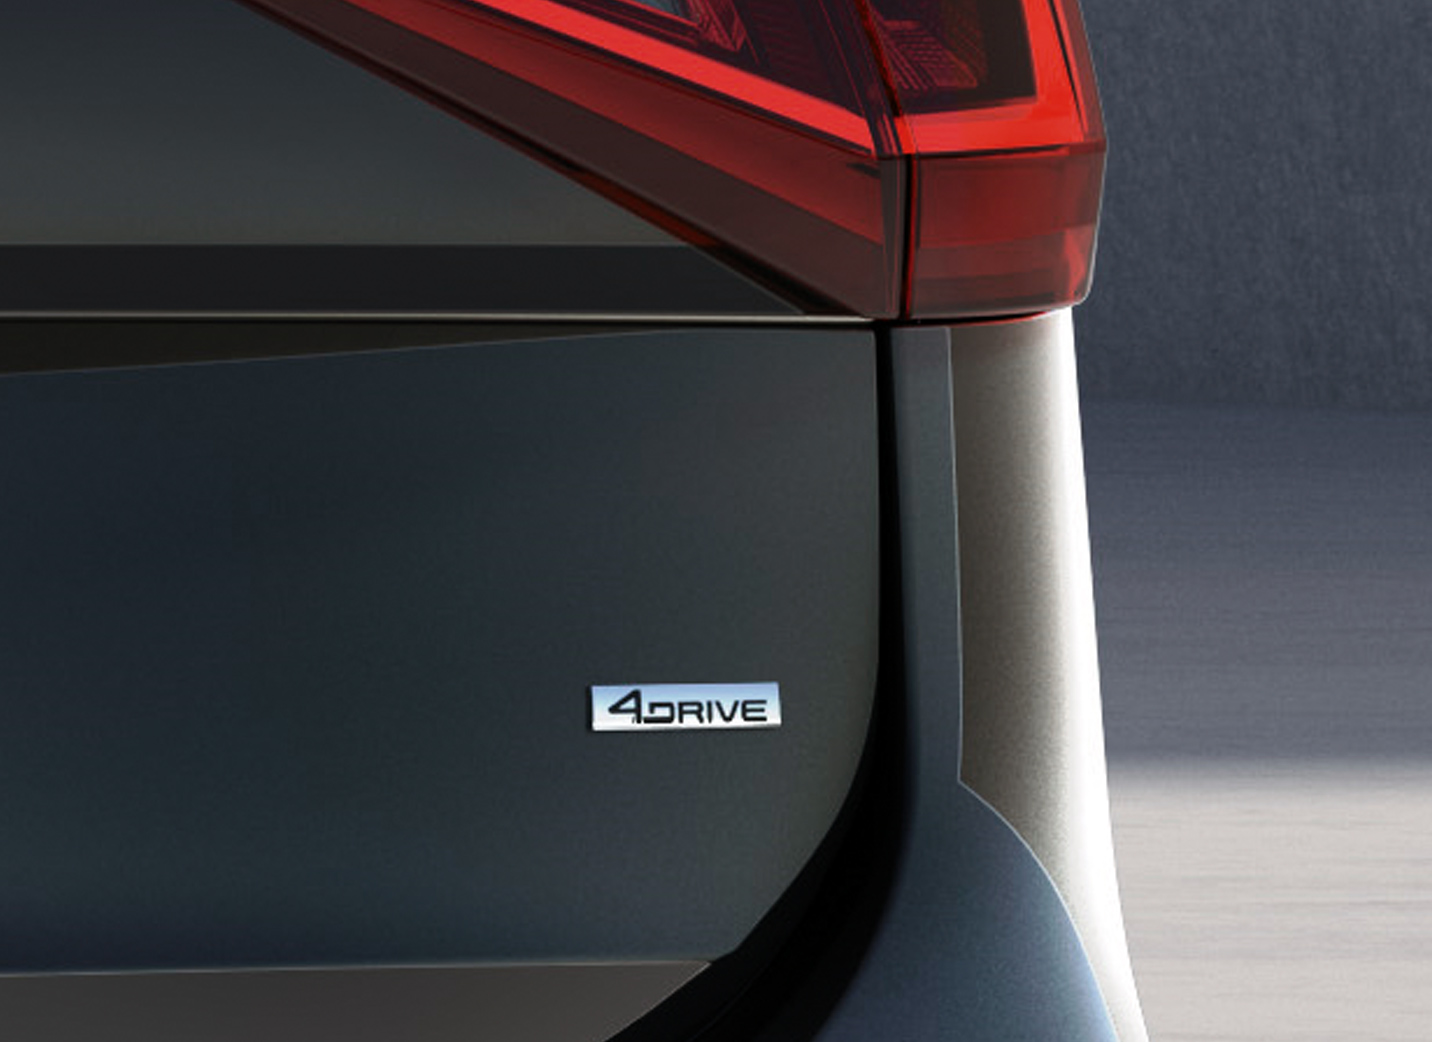 Naujojo 7 vietų SUV SEAT Tarraco vaizdas iš galo su 4Drive logotipu